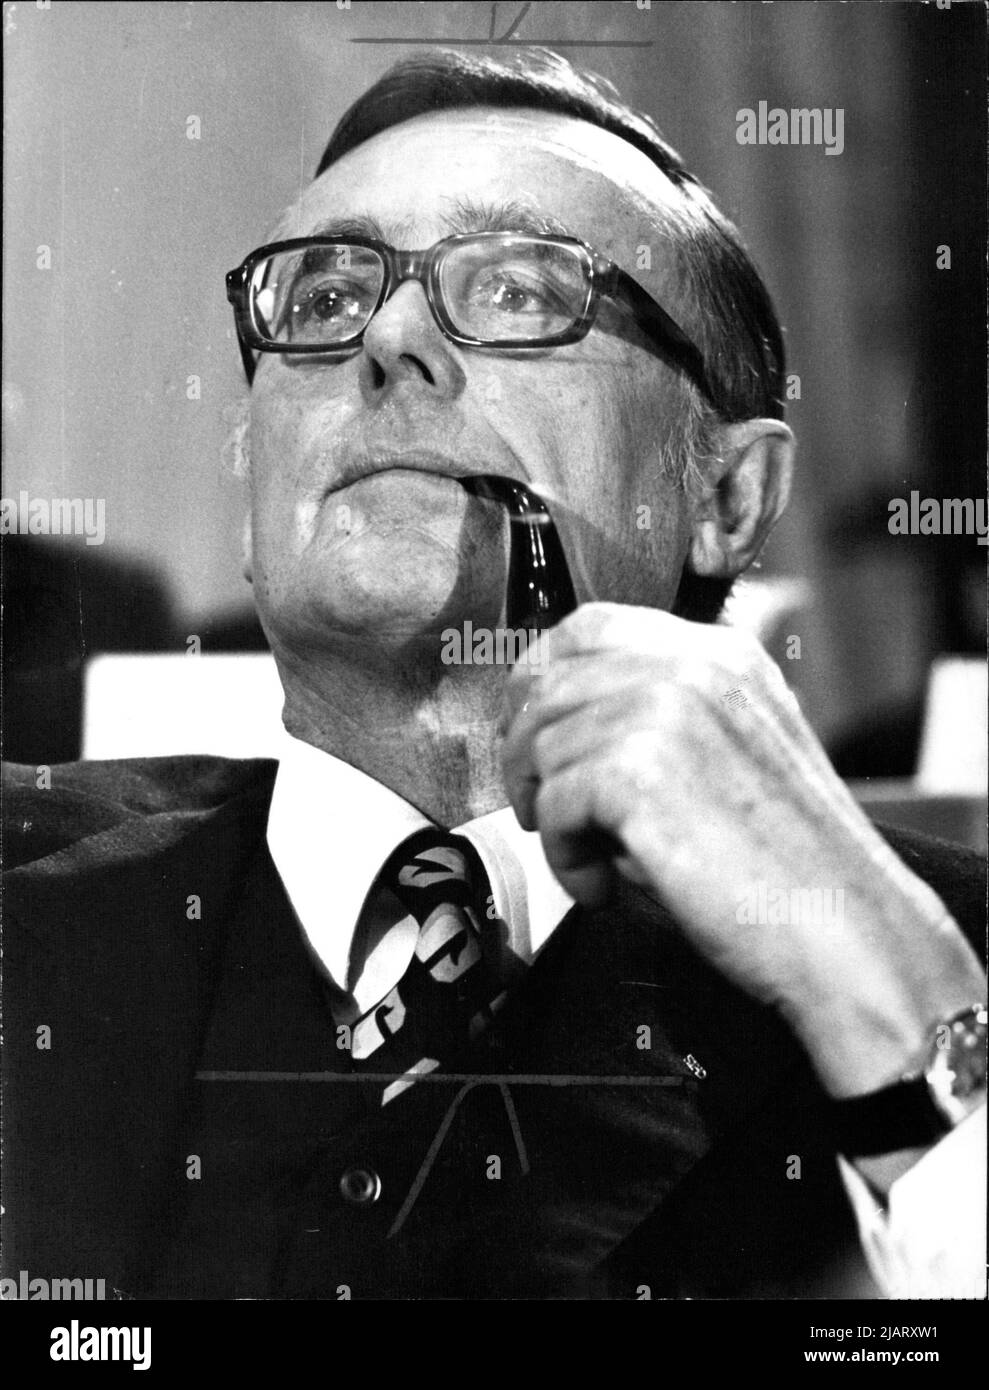 Karl August Fritz Schiller (24. 1911 – 26 de abril. 1994 de diciembre) war ein deutscher Wissenschaftler und Politiker (SPD). Er war von 1966 bis 1972 erster sozialdemokratischer Bundesminister für Wirtschaft und von 1971 bis 1972 zusätzlich Bundesminister der Finanzen. Foto de stock